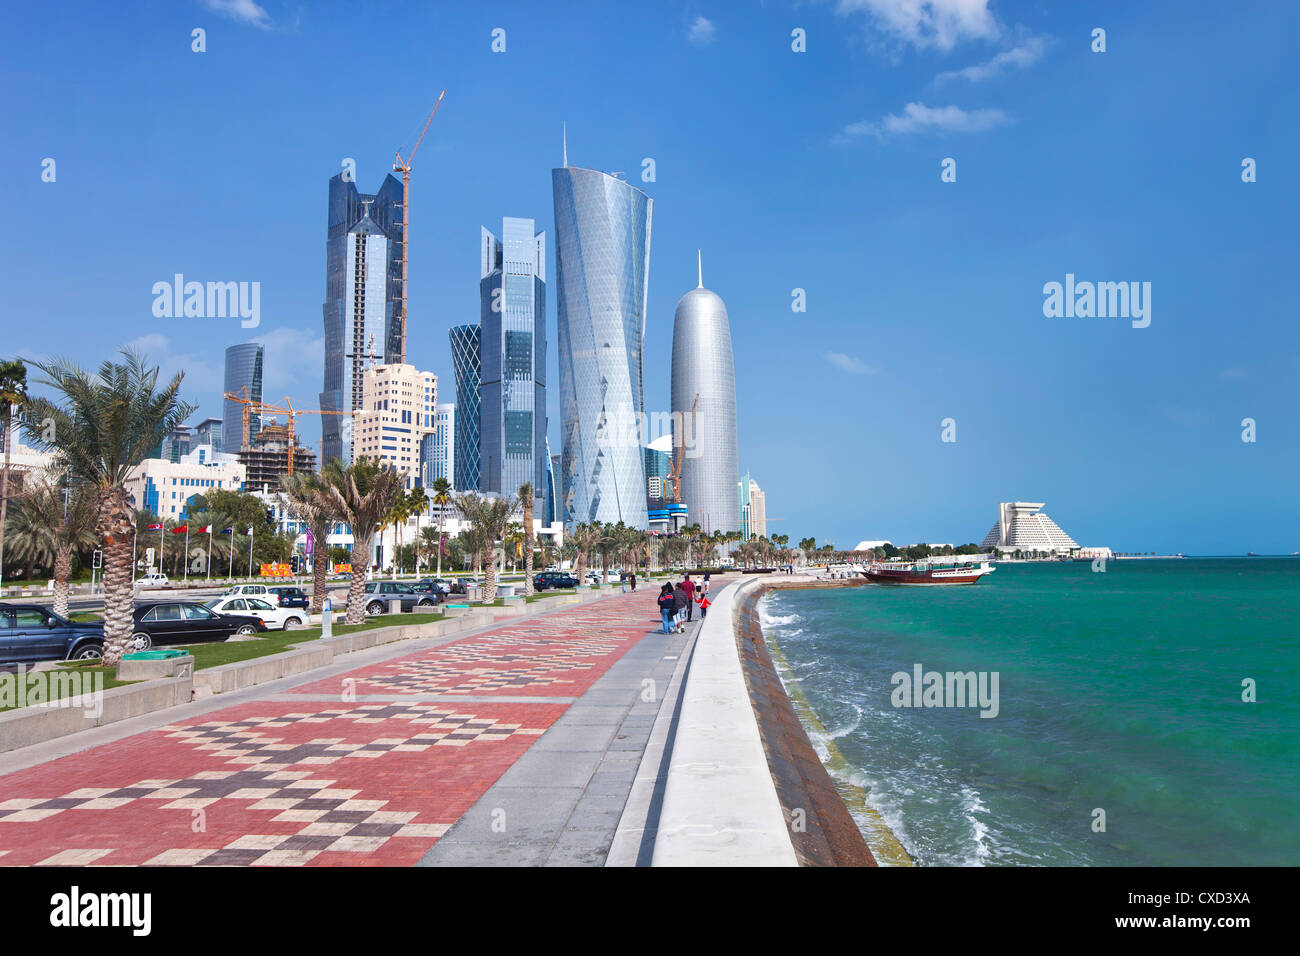 Afficher le long de la Corniche vers le nouvel horizon de la West Bay central financial district, Doha, Qatar, Moyen-Orient Banque D'Images